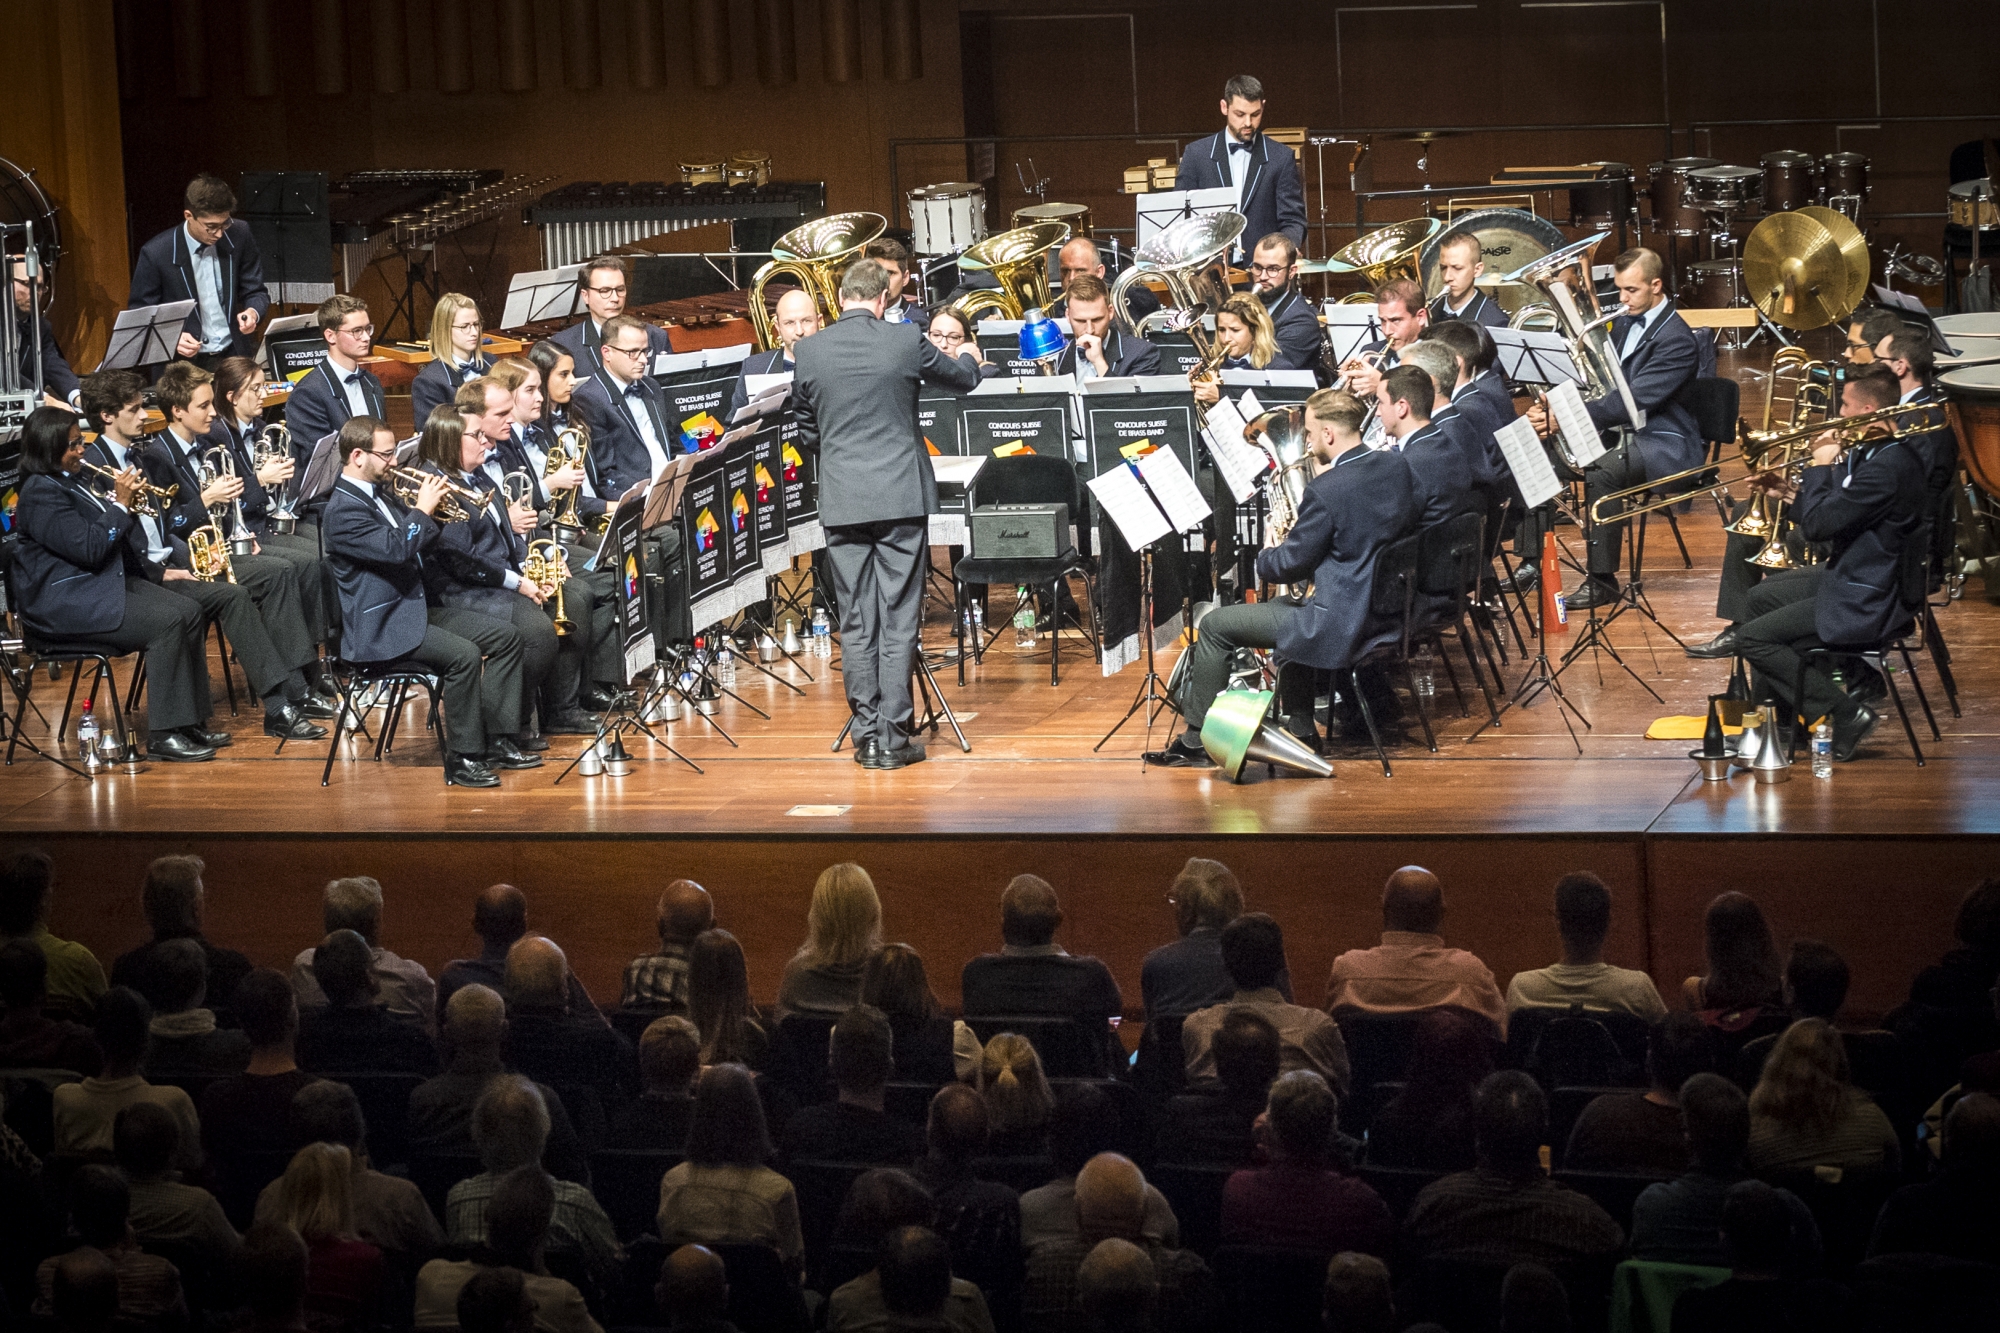 Le Valaisia Brass Band, ici à Montreux lors de son 4e titre consécutif de champion suisse, a été désigné meilleur ensemble de l'année 2018 au niveau international.